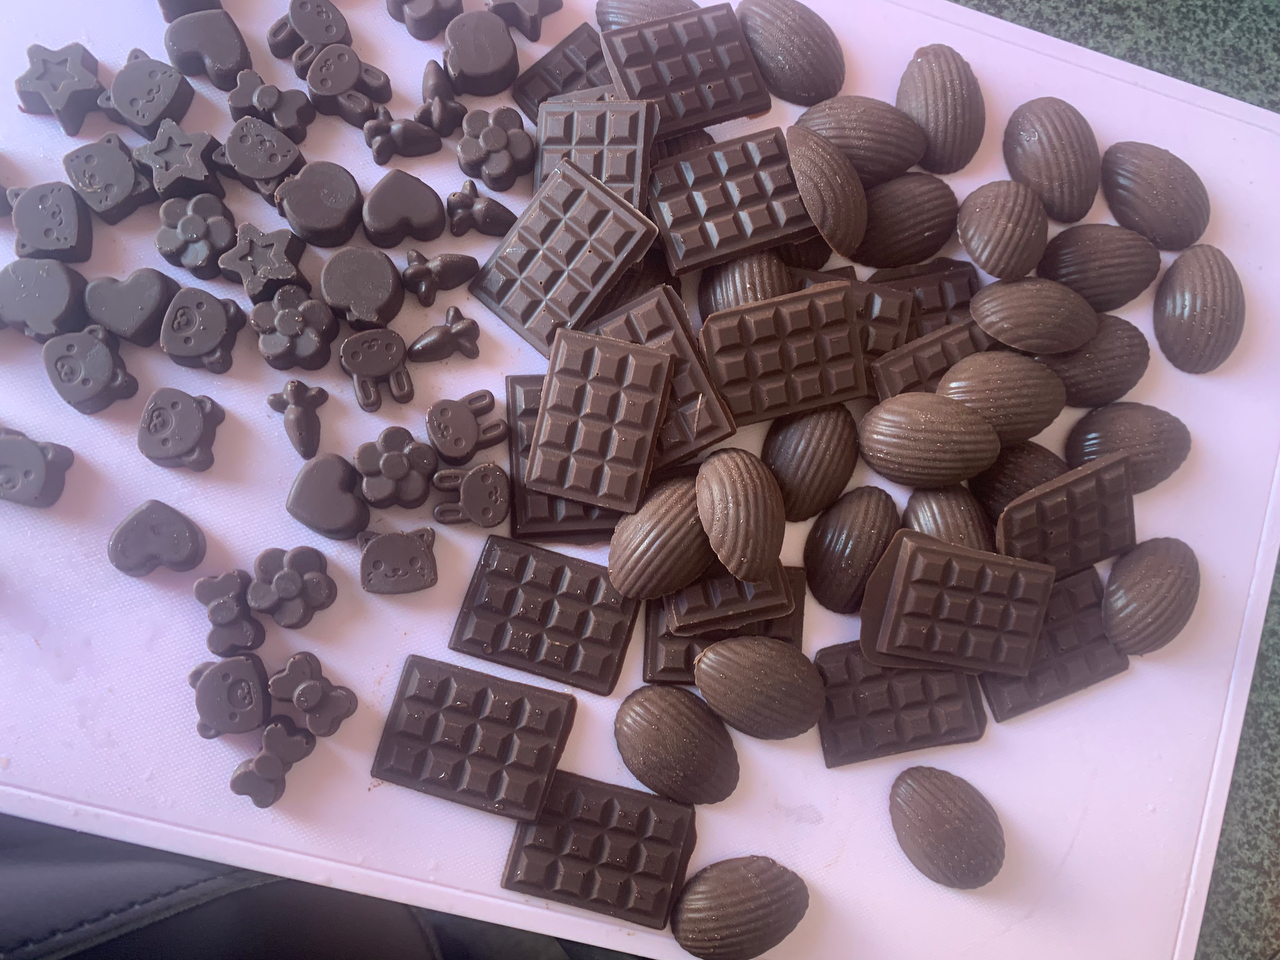 【自制无糖（纯天然代糖）巧克力系列】（之一）适合零基础的人能够看懂黑巧克力从原料到成型的全过程。告诉你自由调配各种黑巧的配方比例；附有65幅图片及视频讲解。